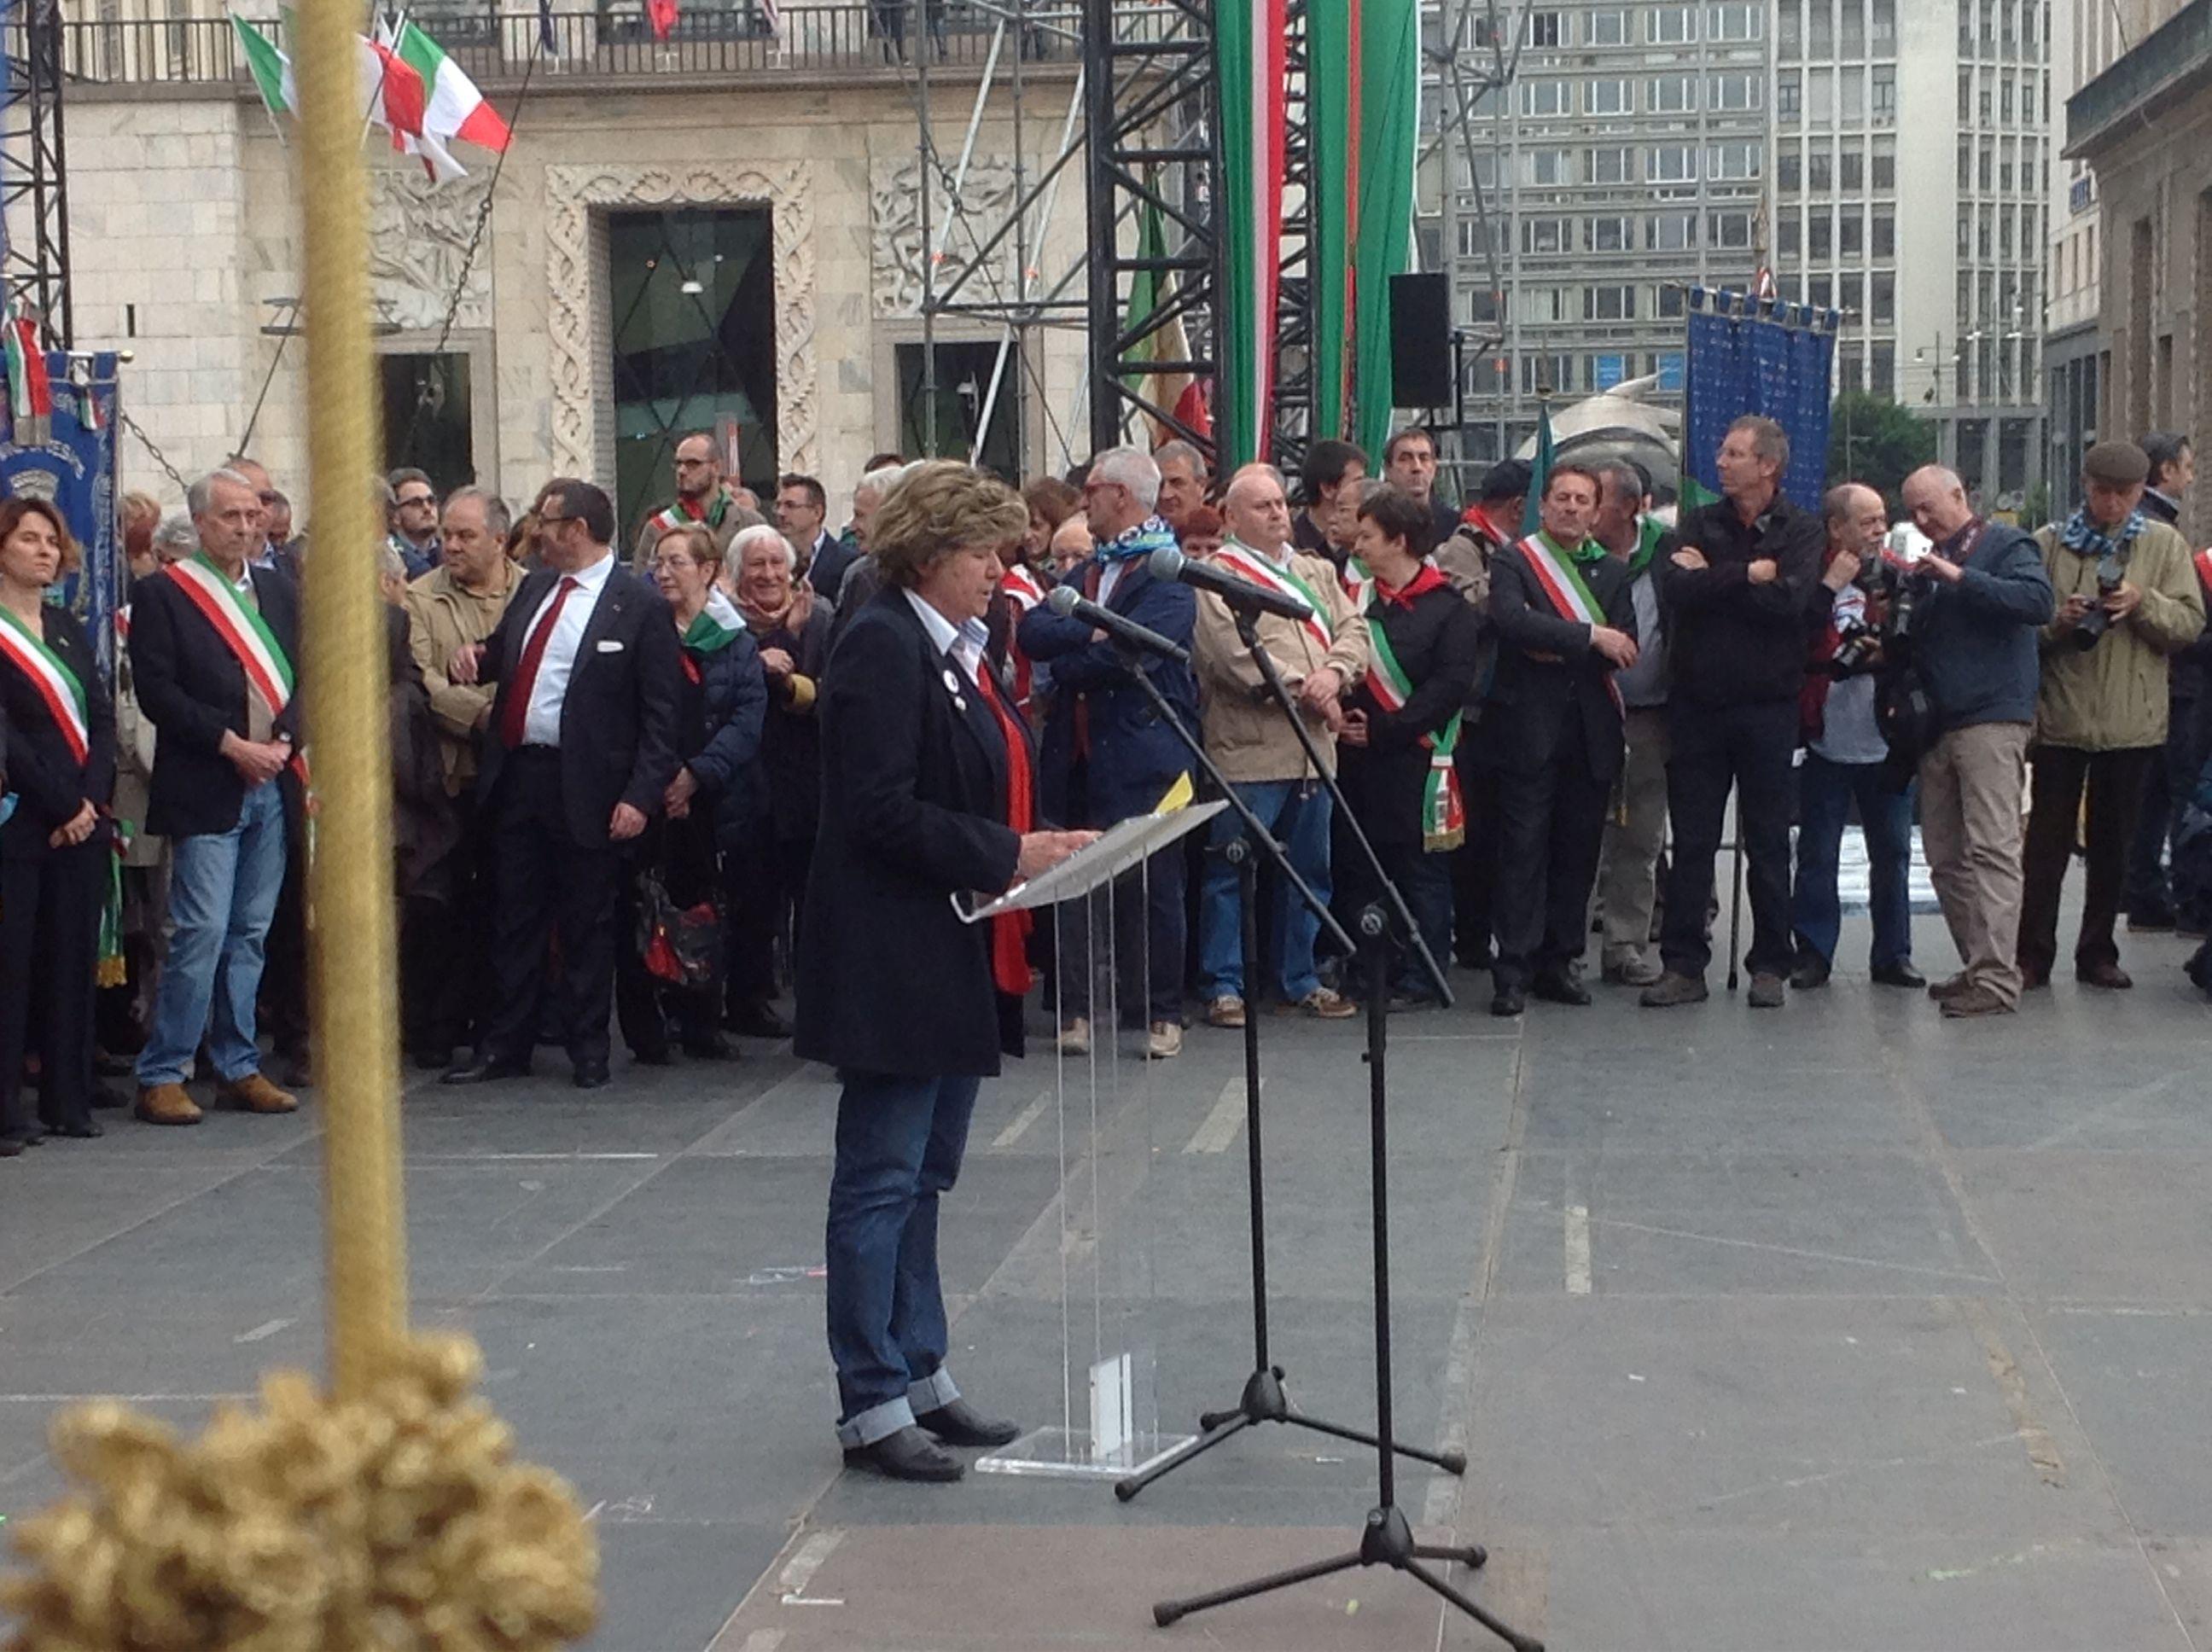 Il segretario generale della Cgil Susanna Camusso sul palco in piazza Duomo a Milano